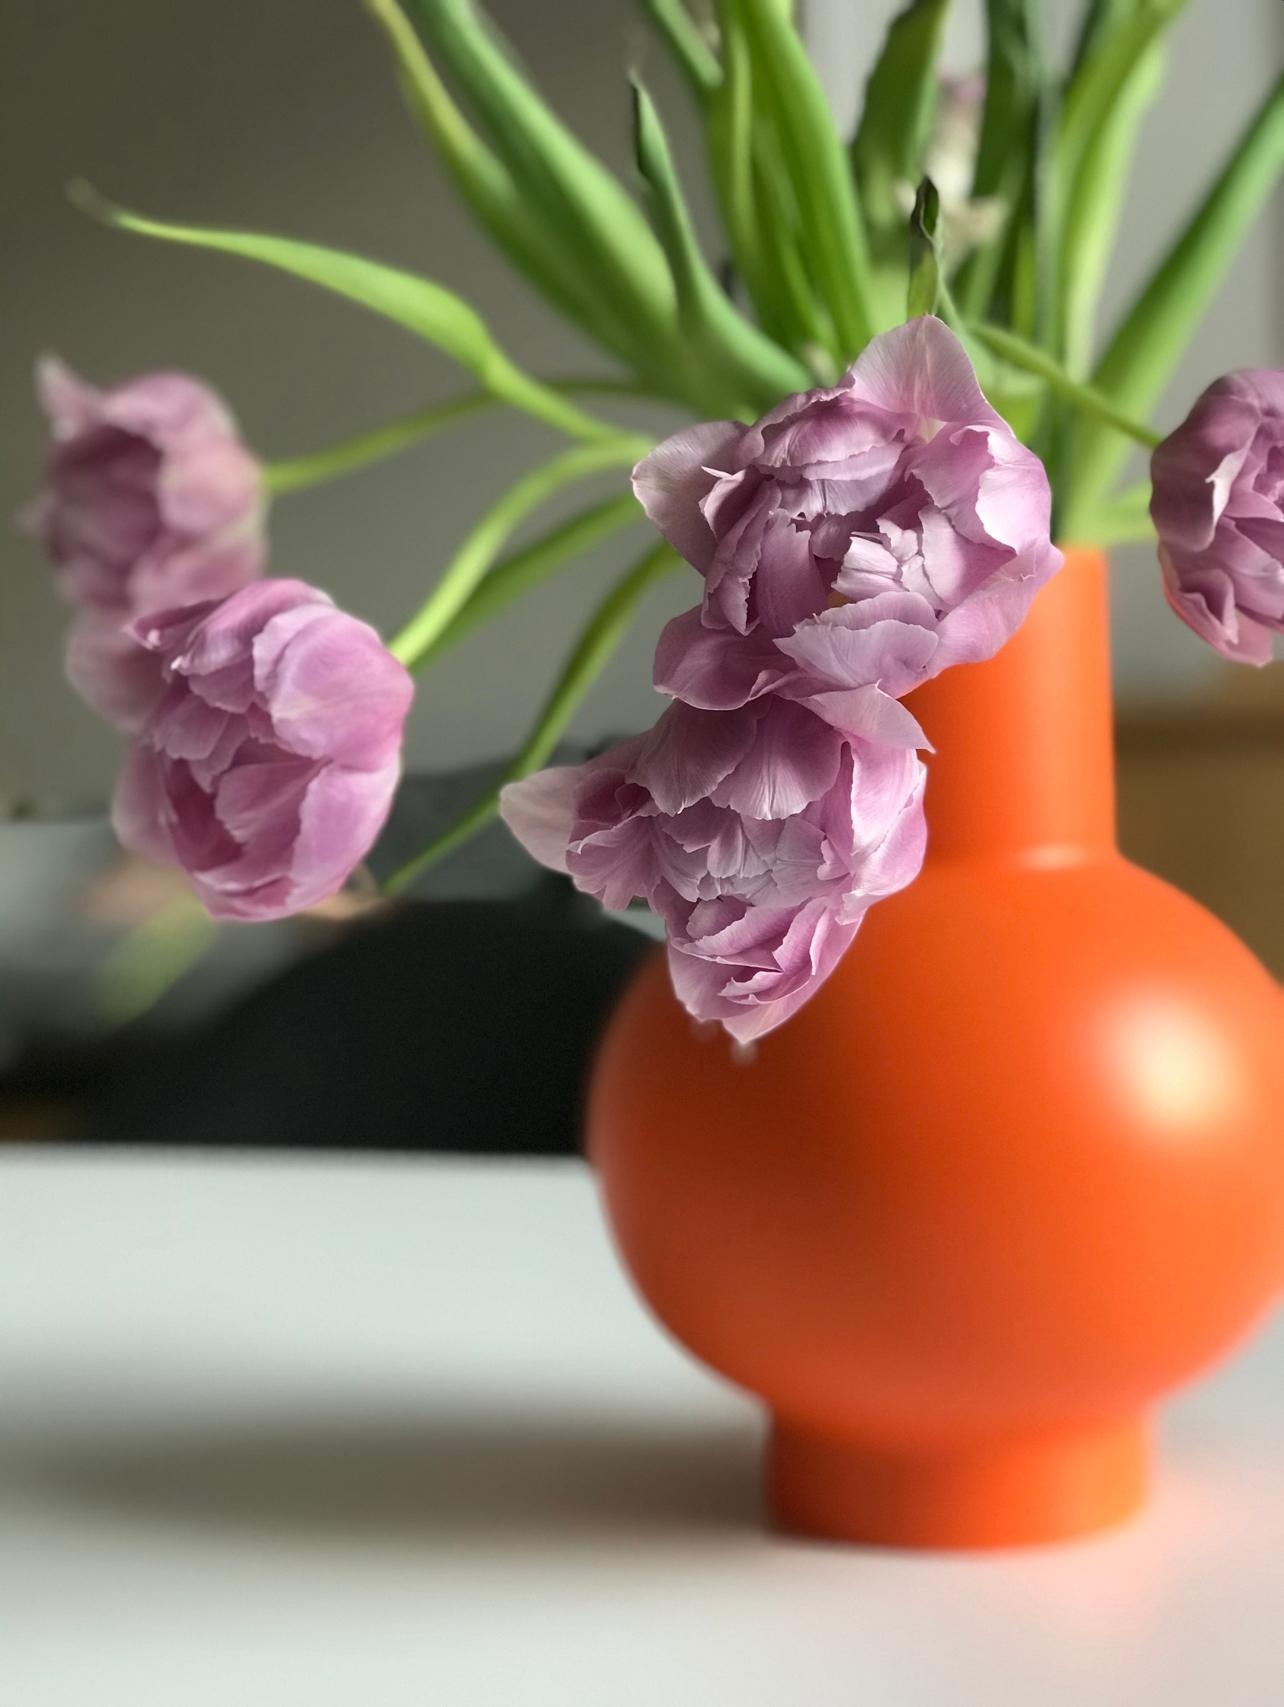 Es wir Zeit, dass der Frühling kommt! #tulpen #tulips #tulpenliebe #blumen